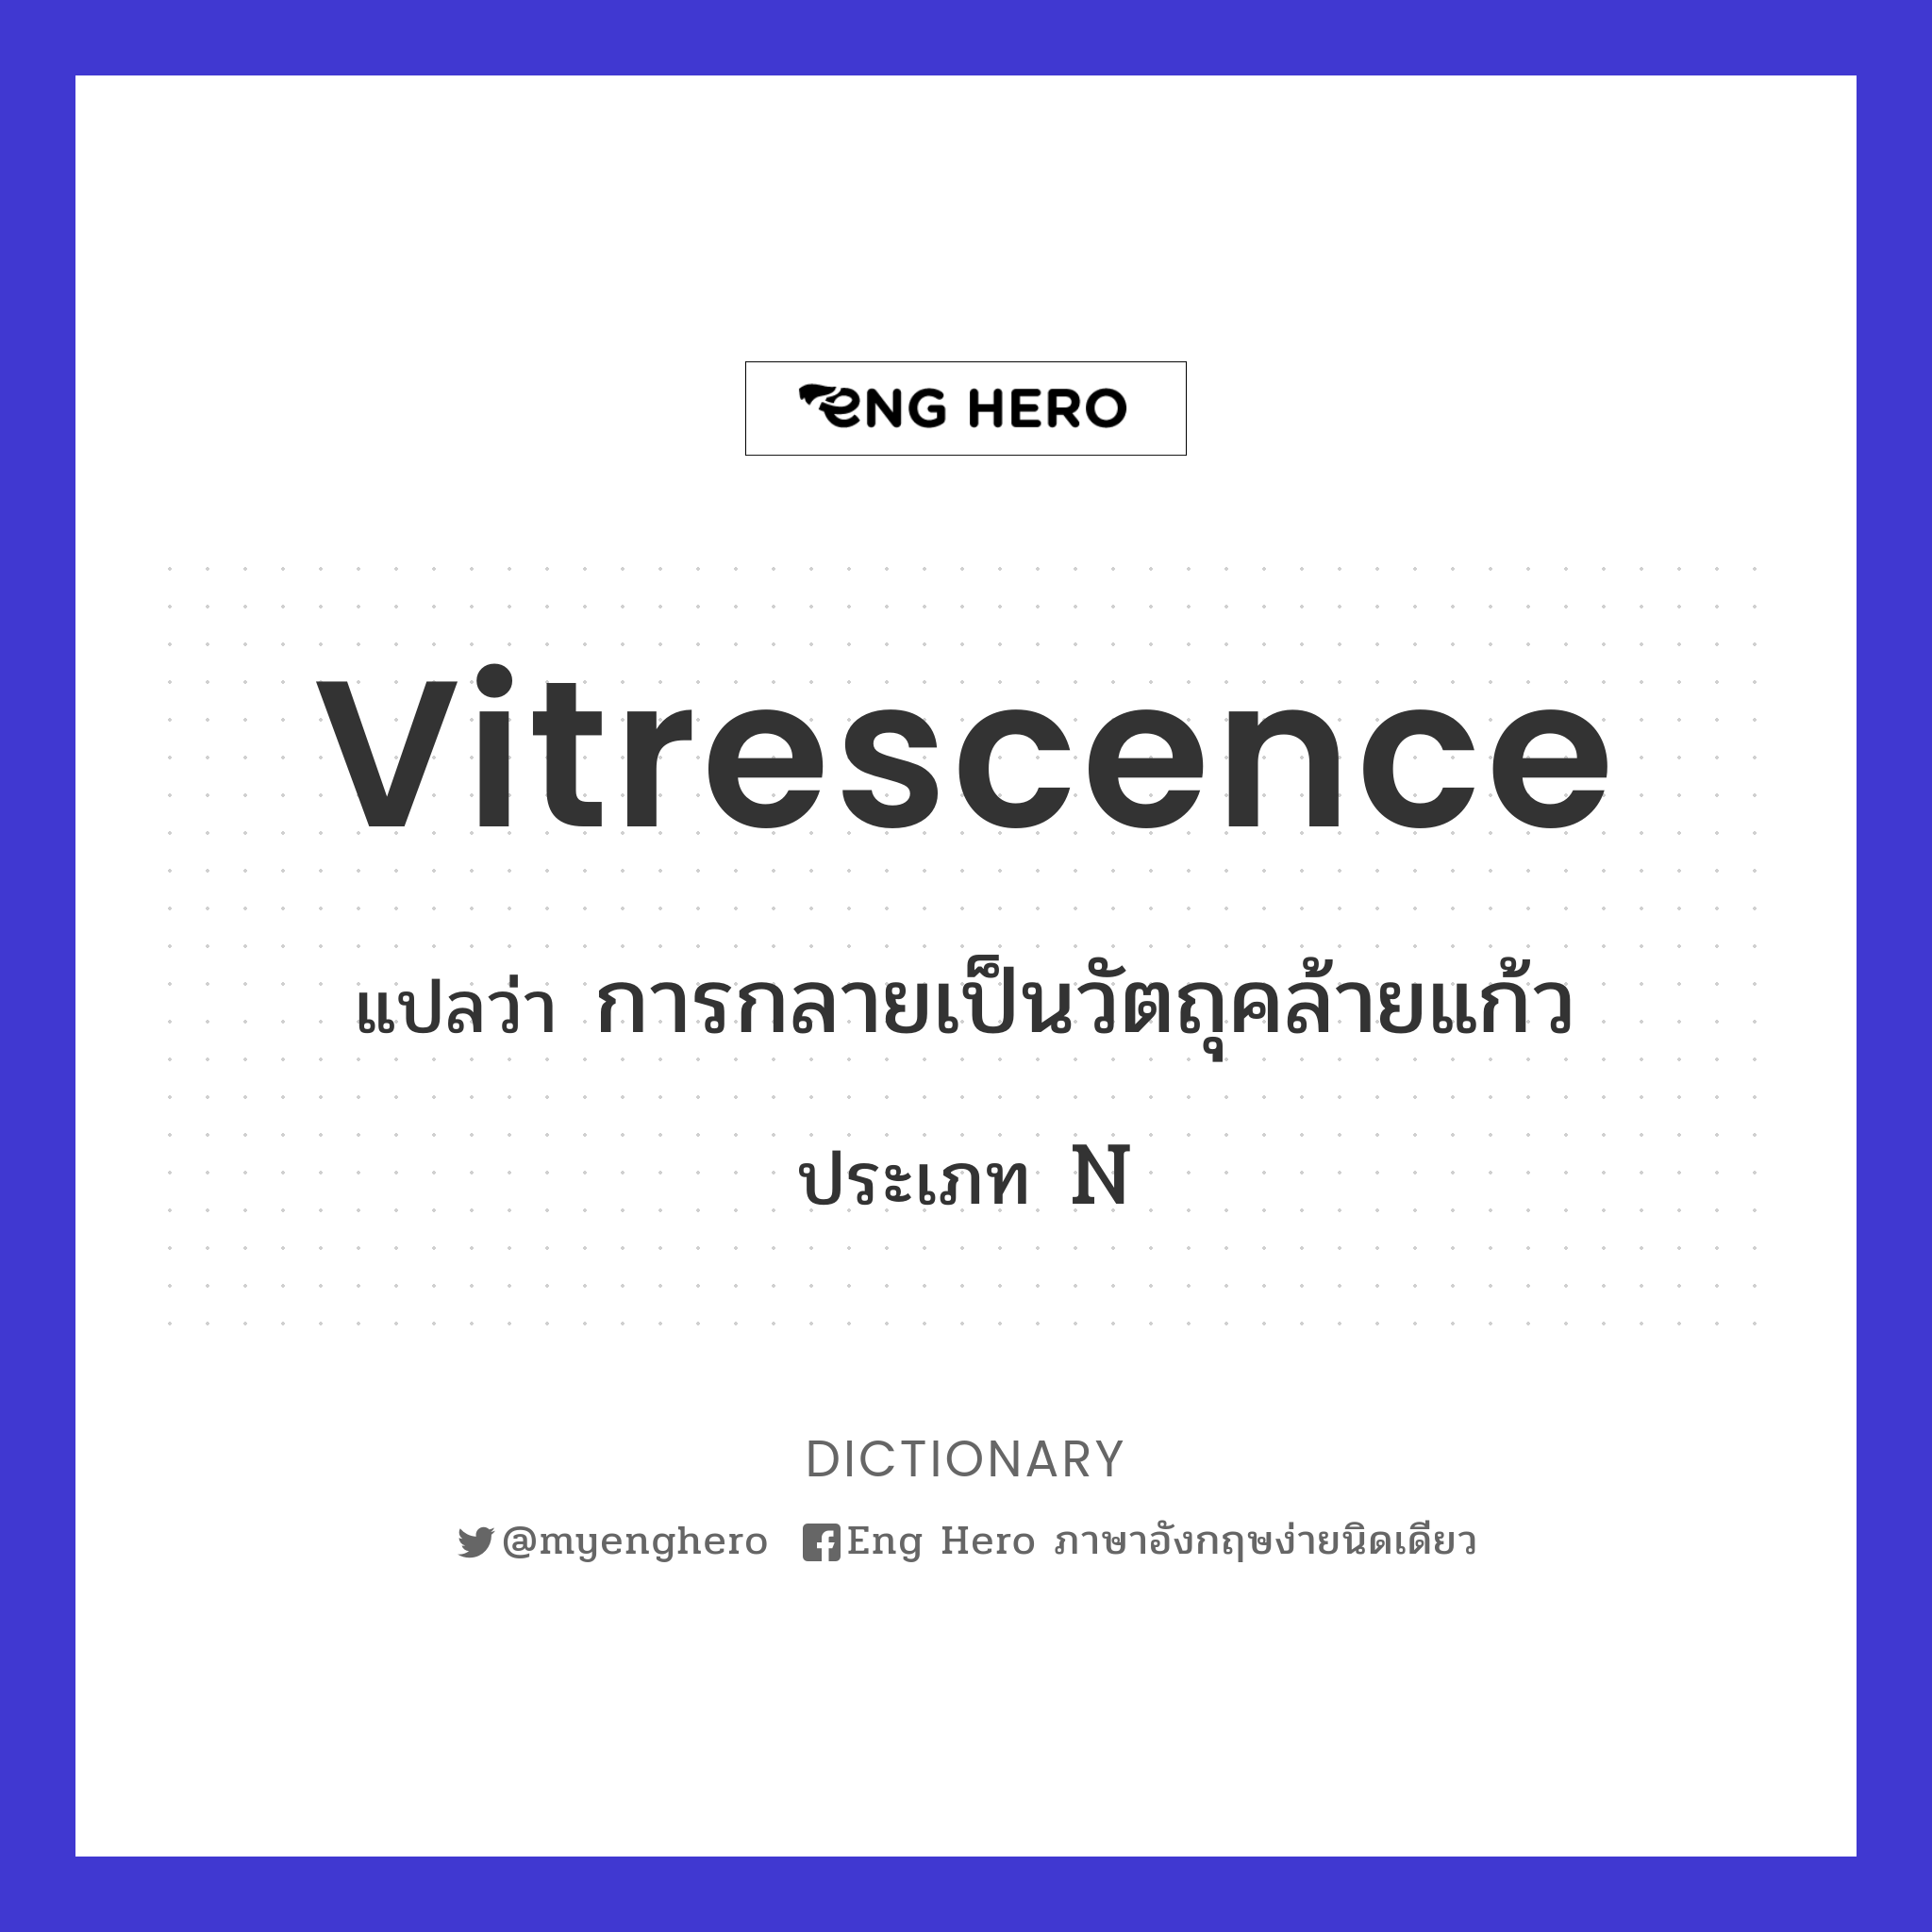 vitrescence